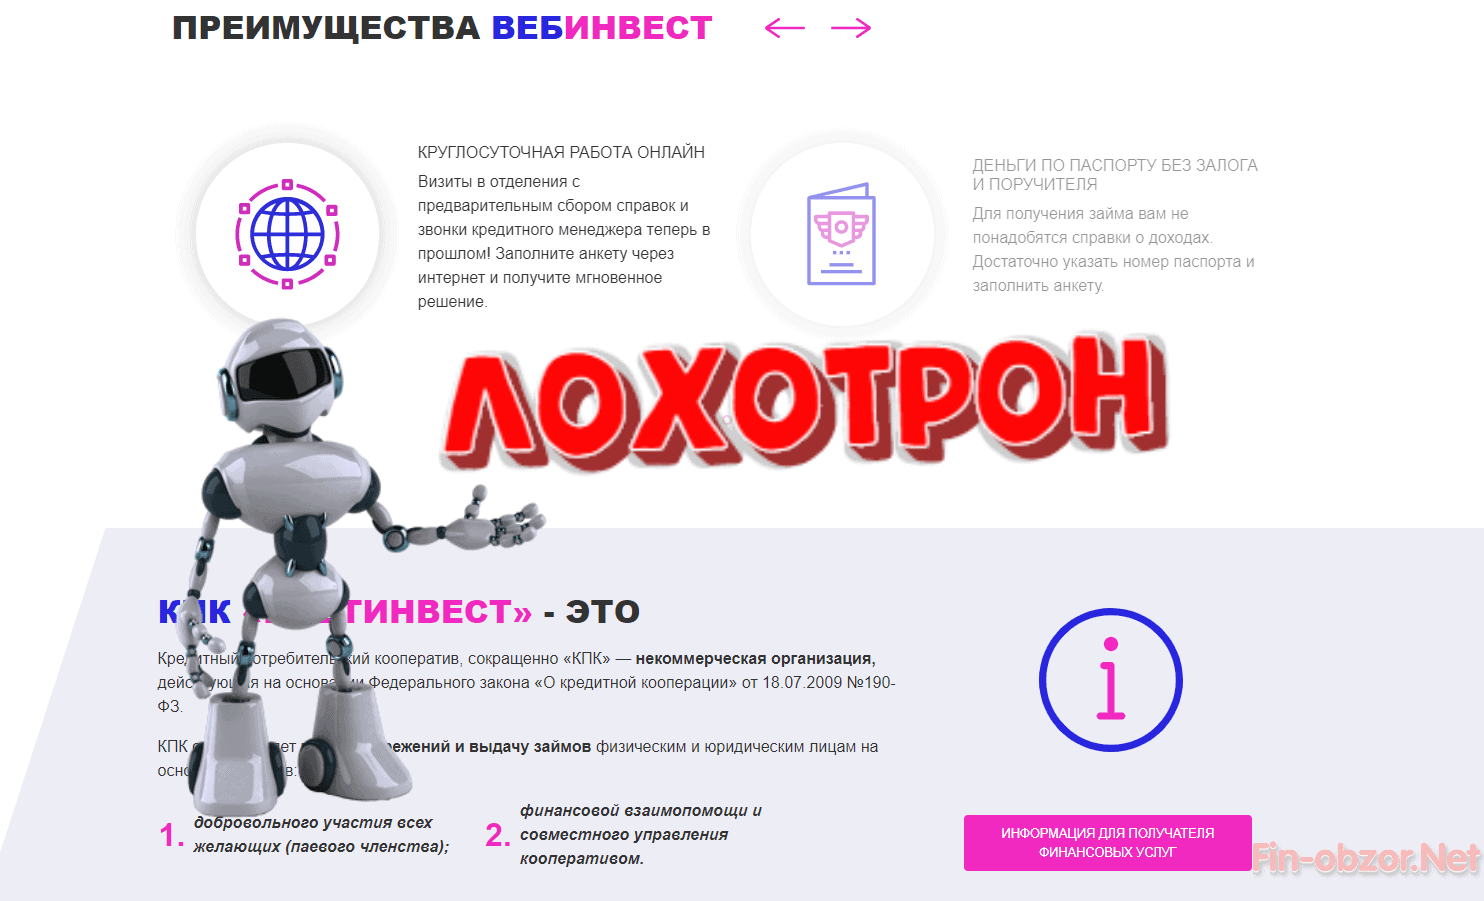 Вебинвест - отзывы вкладчиков. Webinvestment.ru обман